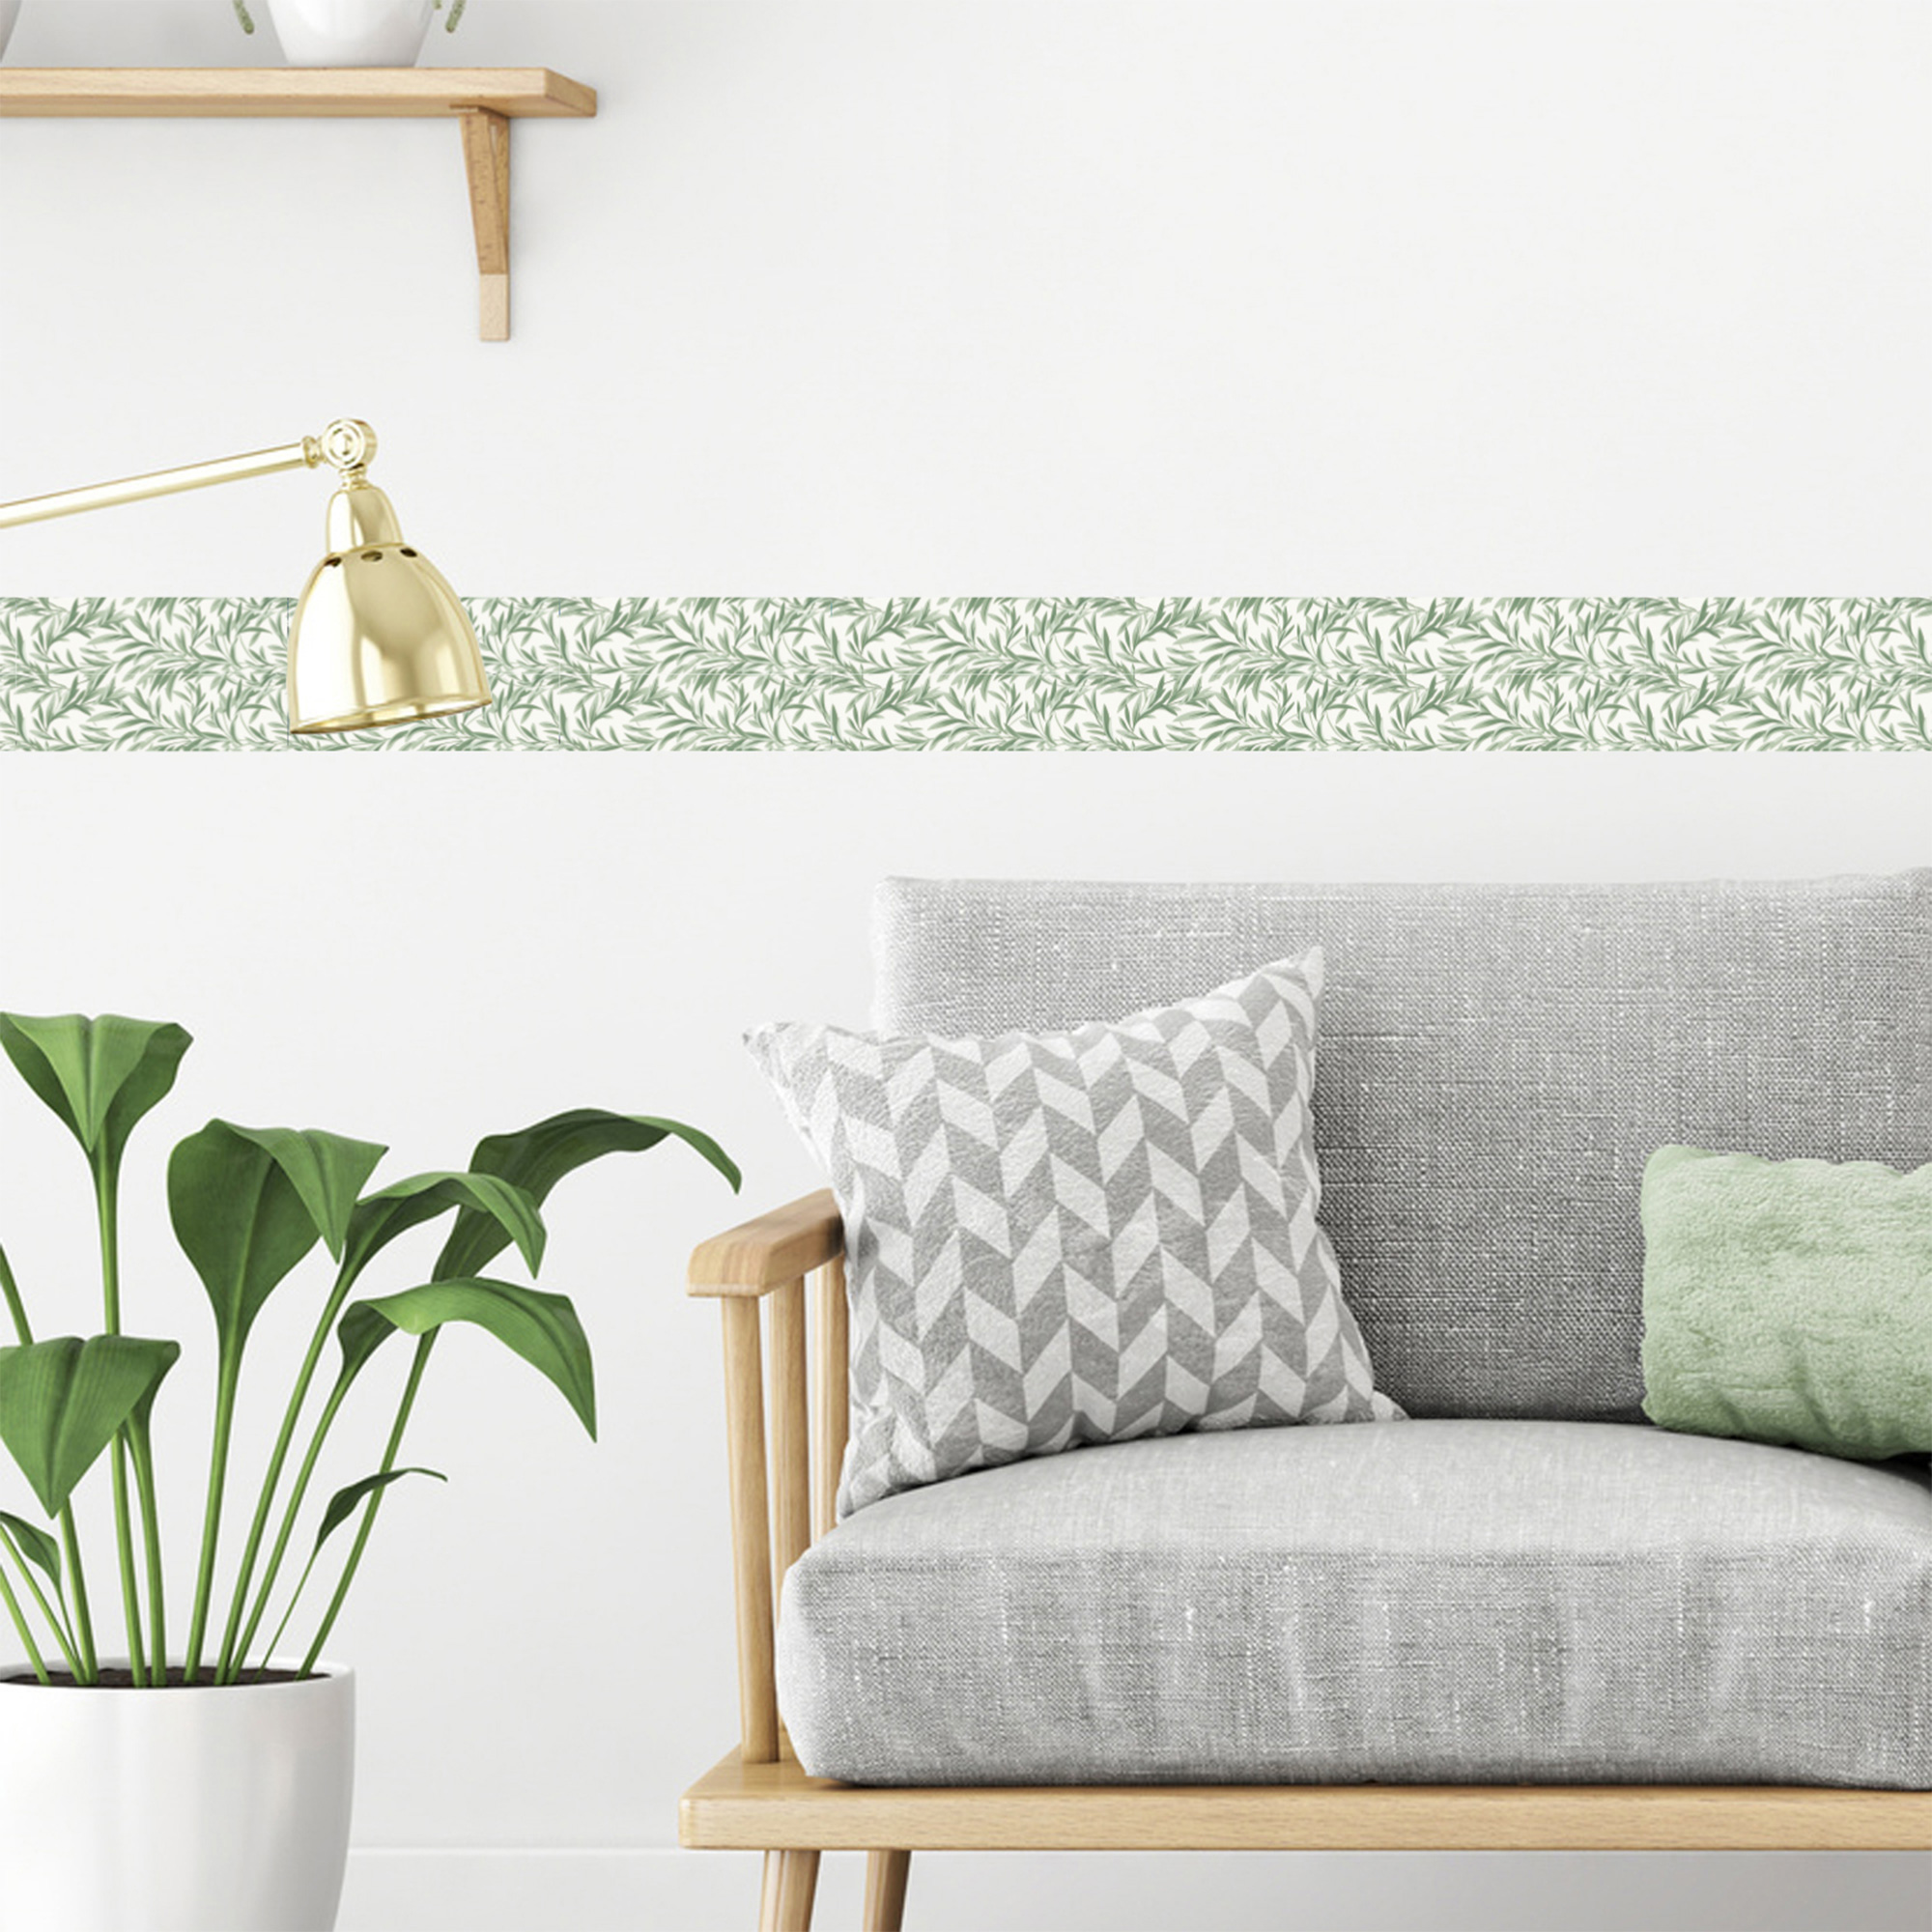 Tendance Frise décorative et adhésive au feuillage Vert, idéale pour personnaliser votre mur